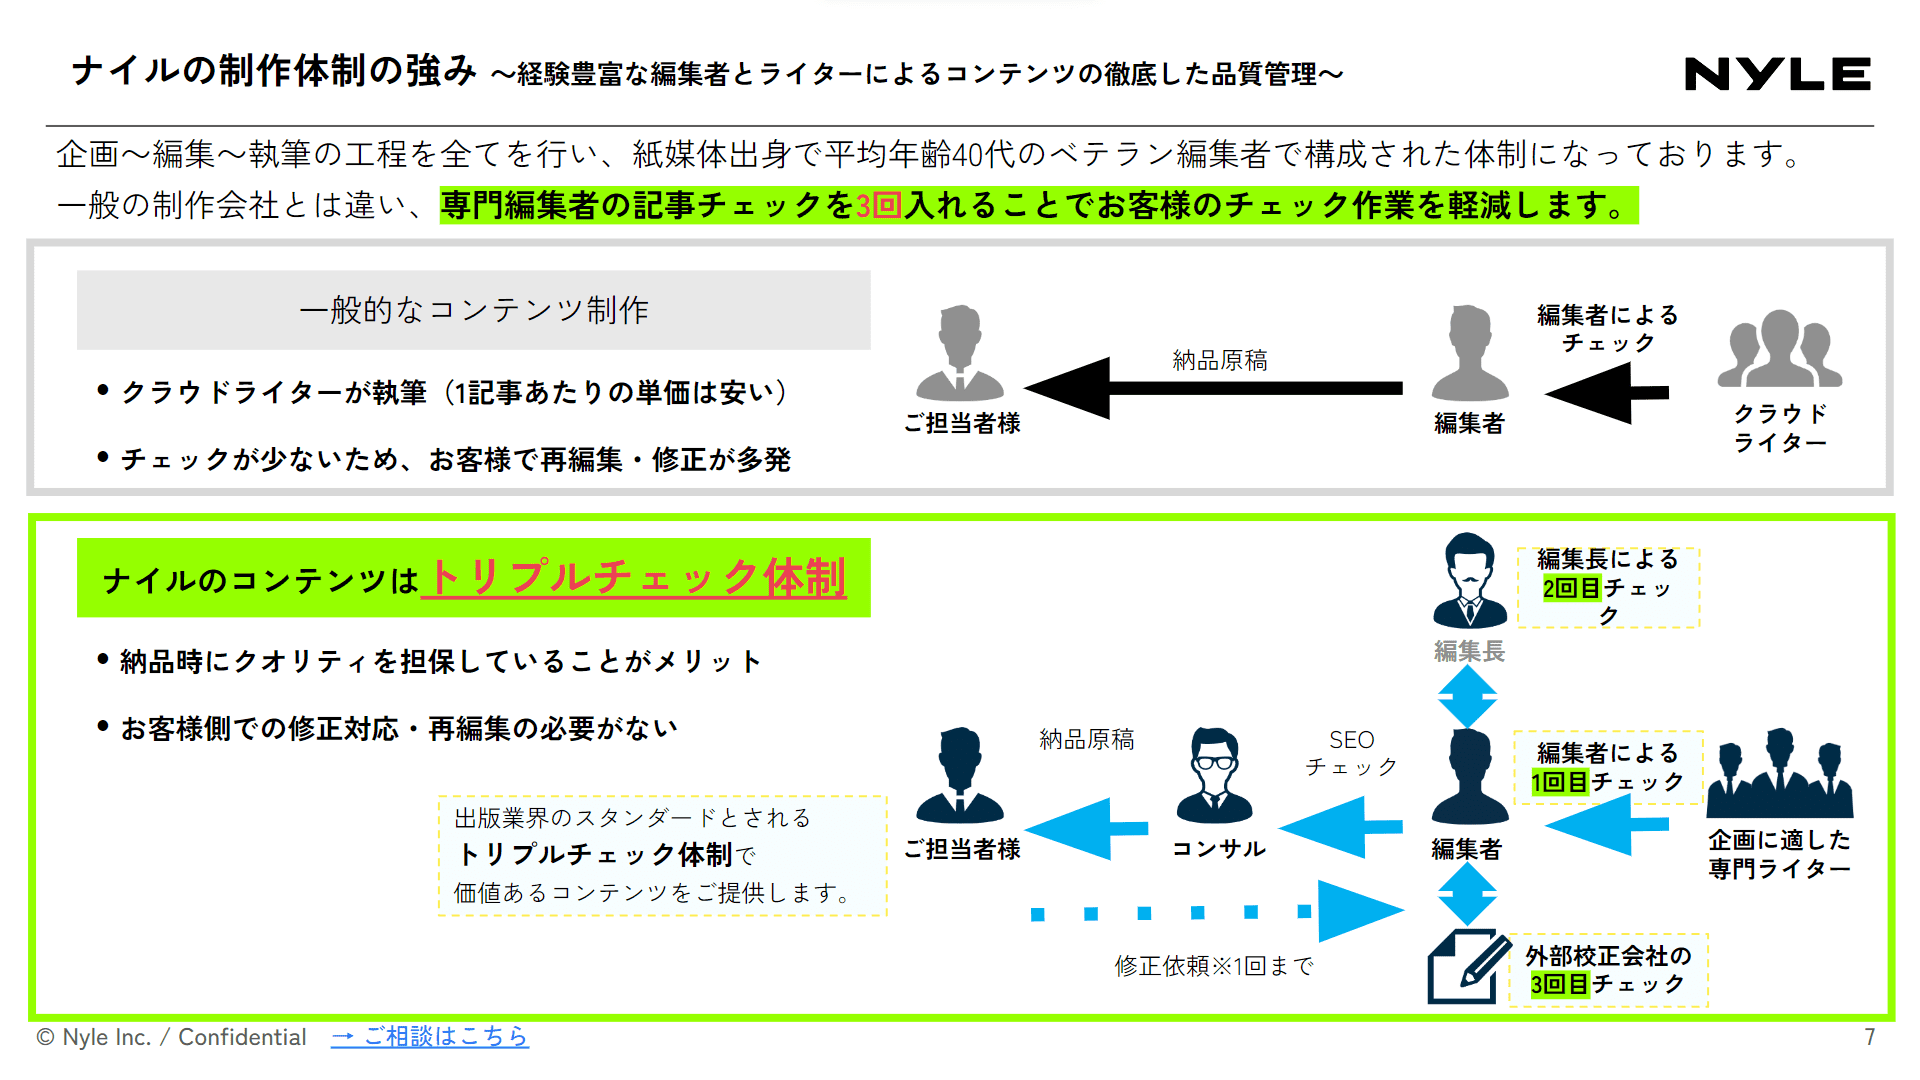 コンテンツ・記事制作代行サービス紹介資料スライドサンプル1